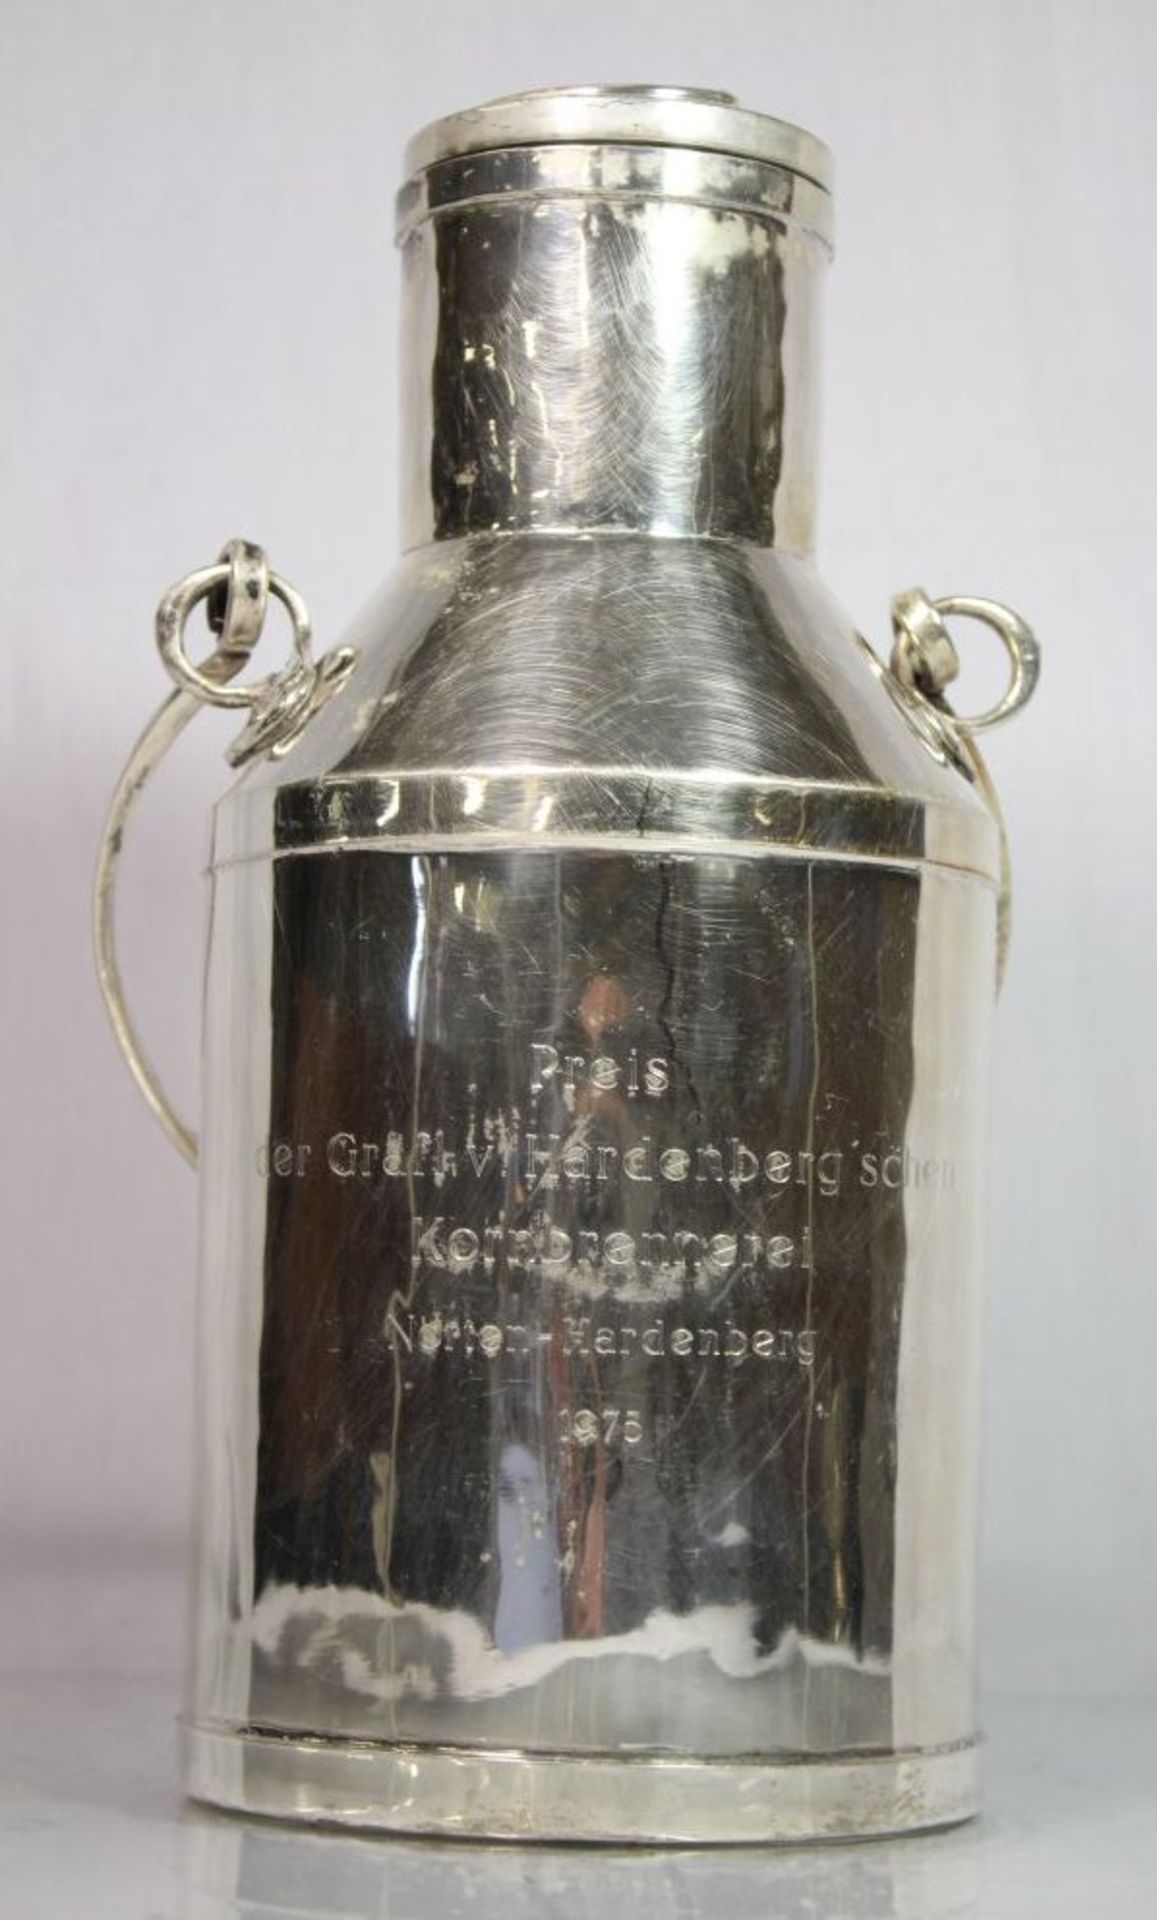 Milchkanne, 800er Silber, Gravur "Preis der Gräfl. v. Hardenberg'schen Kornbrennerei Nörten